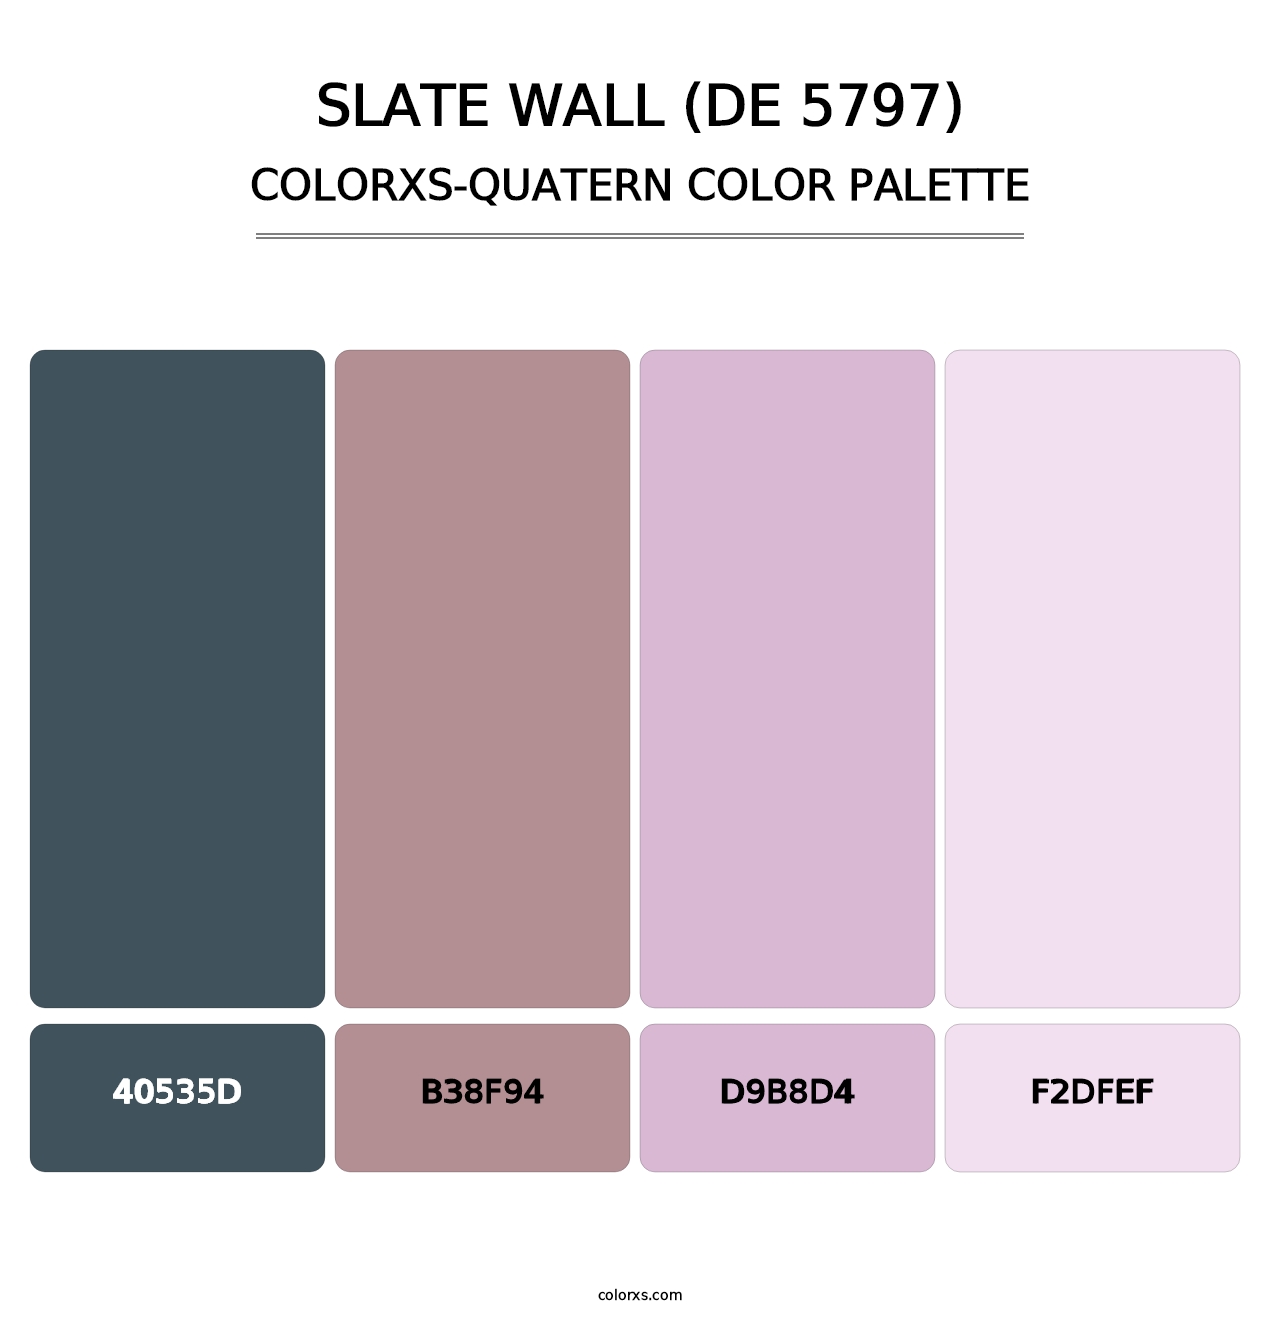 Slate Wall (DE 5797) - Colorxs Quatern Palette